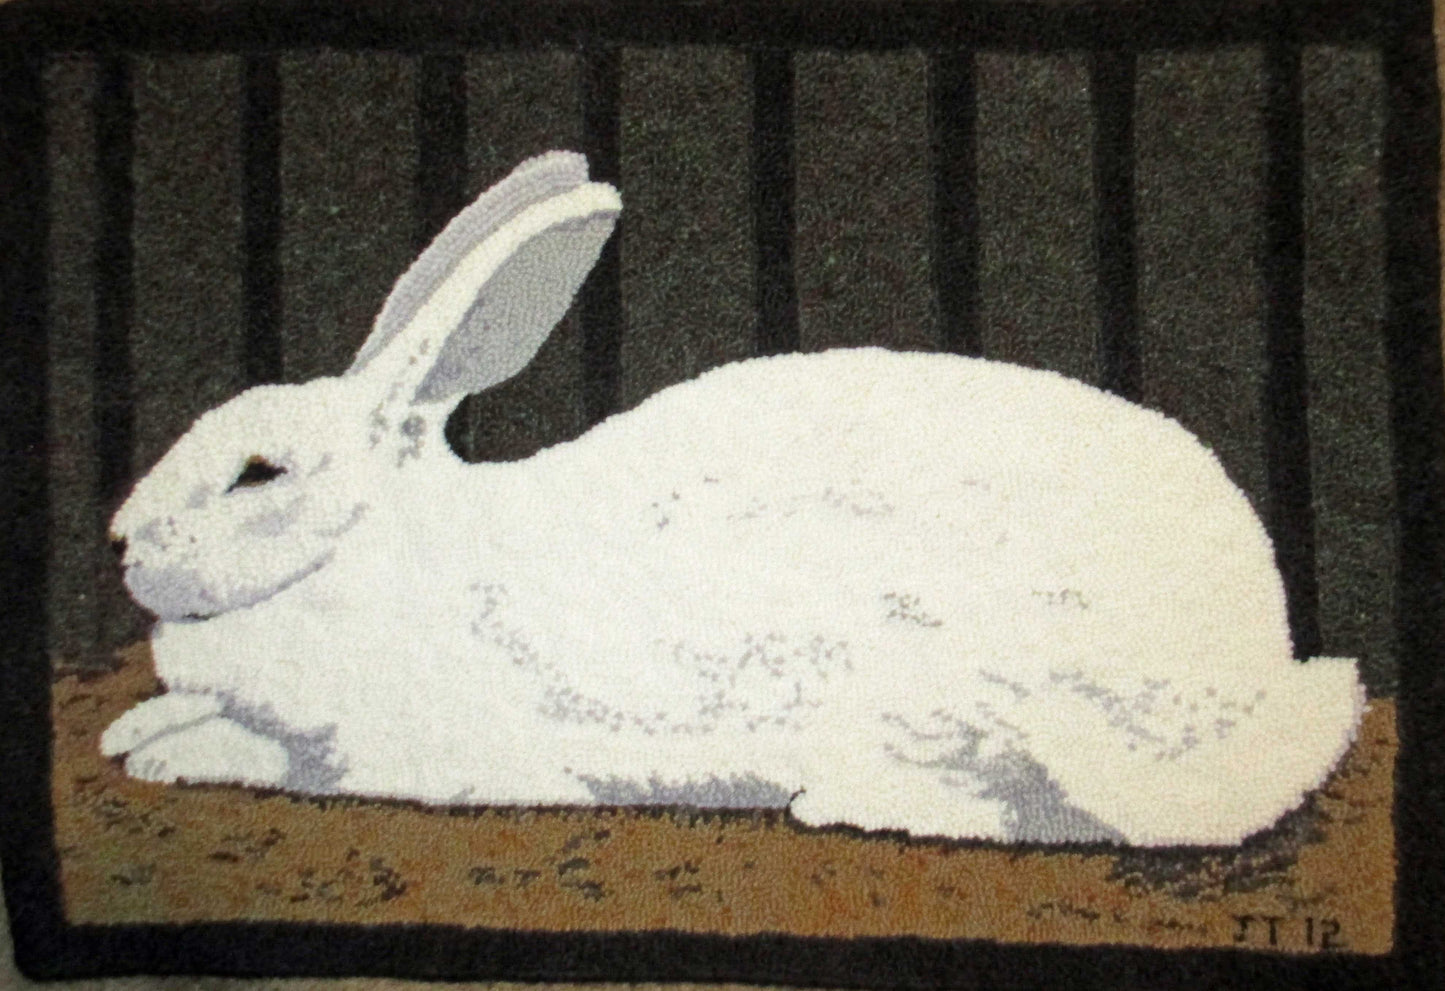 Rabbit Pattern on linen, 31.5"x22.5"